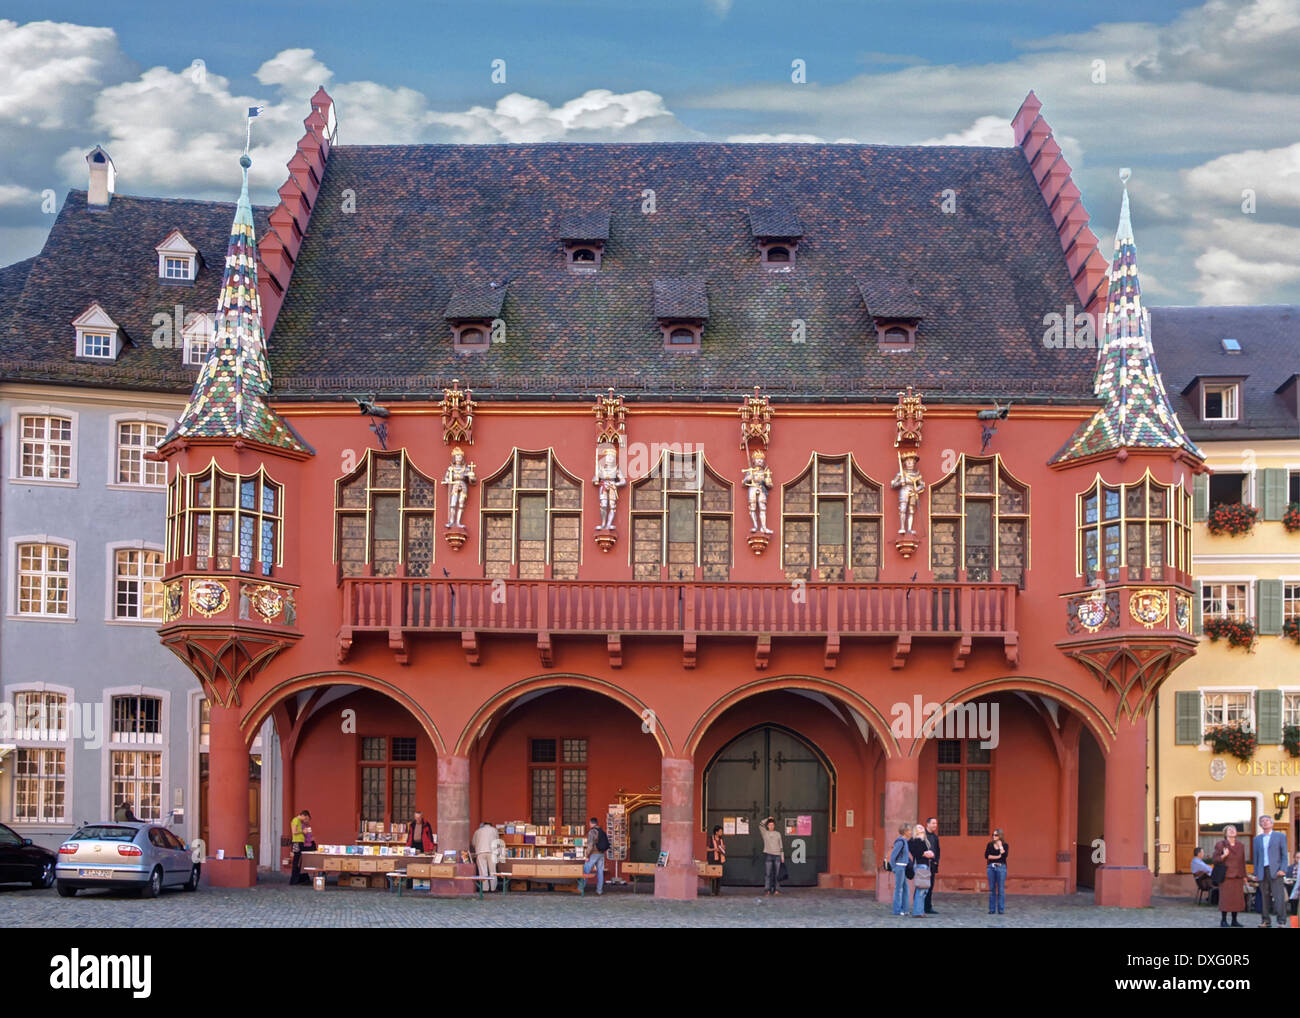 historisches-kaufhaus-freiburg-im-breisgau-dxg0r5.jpg